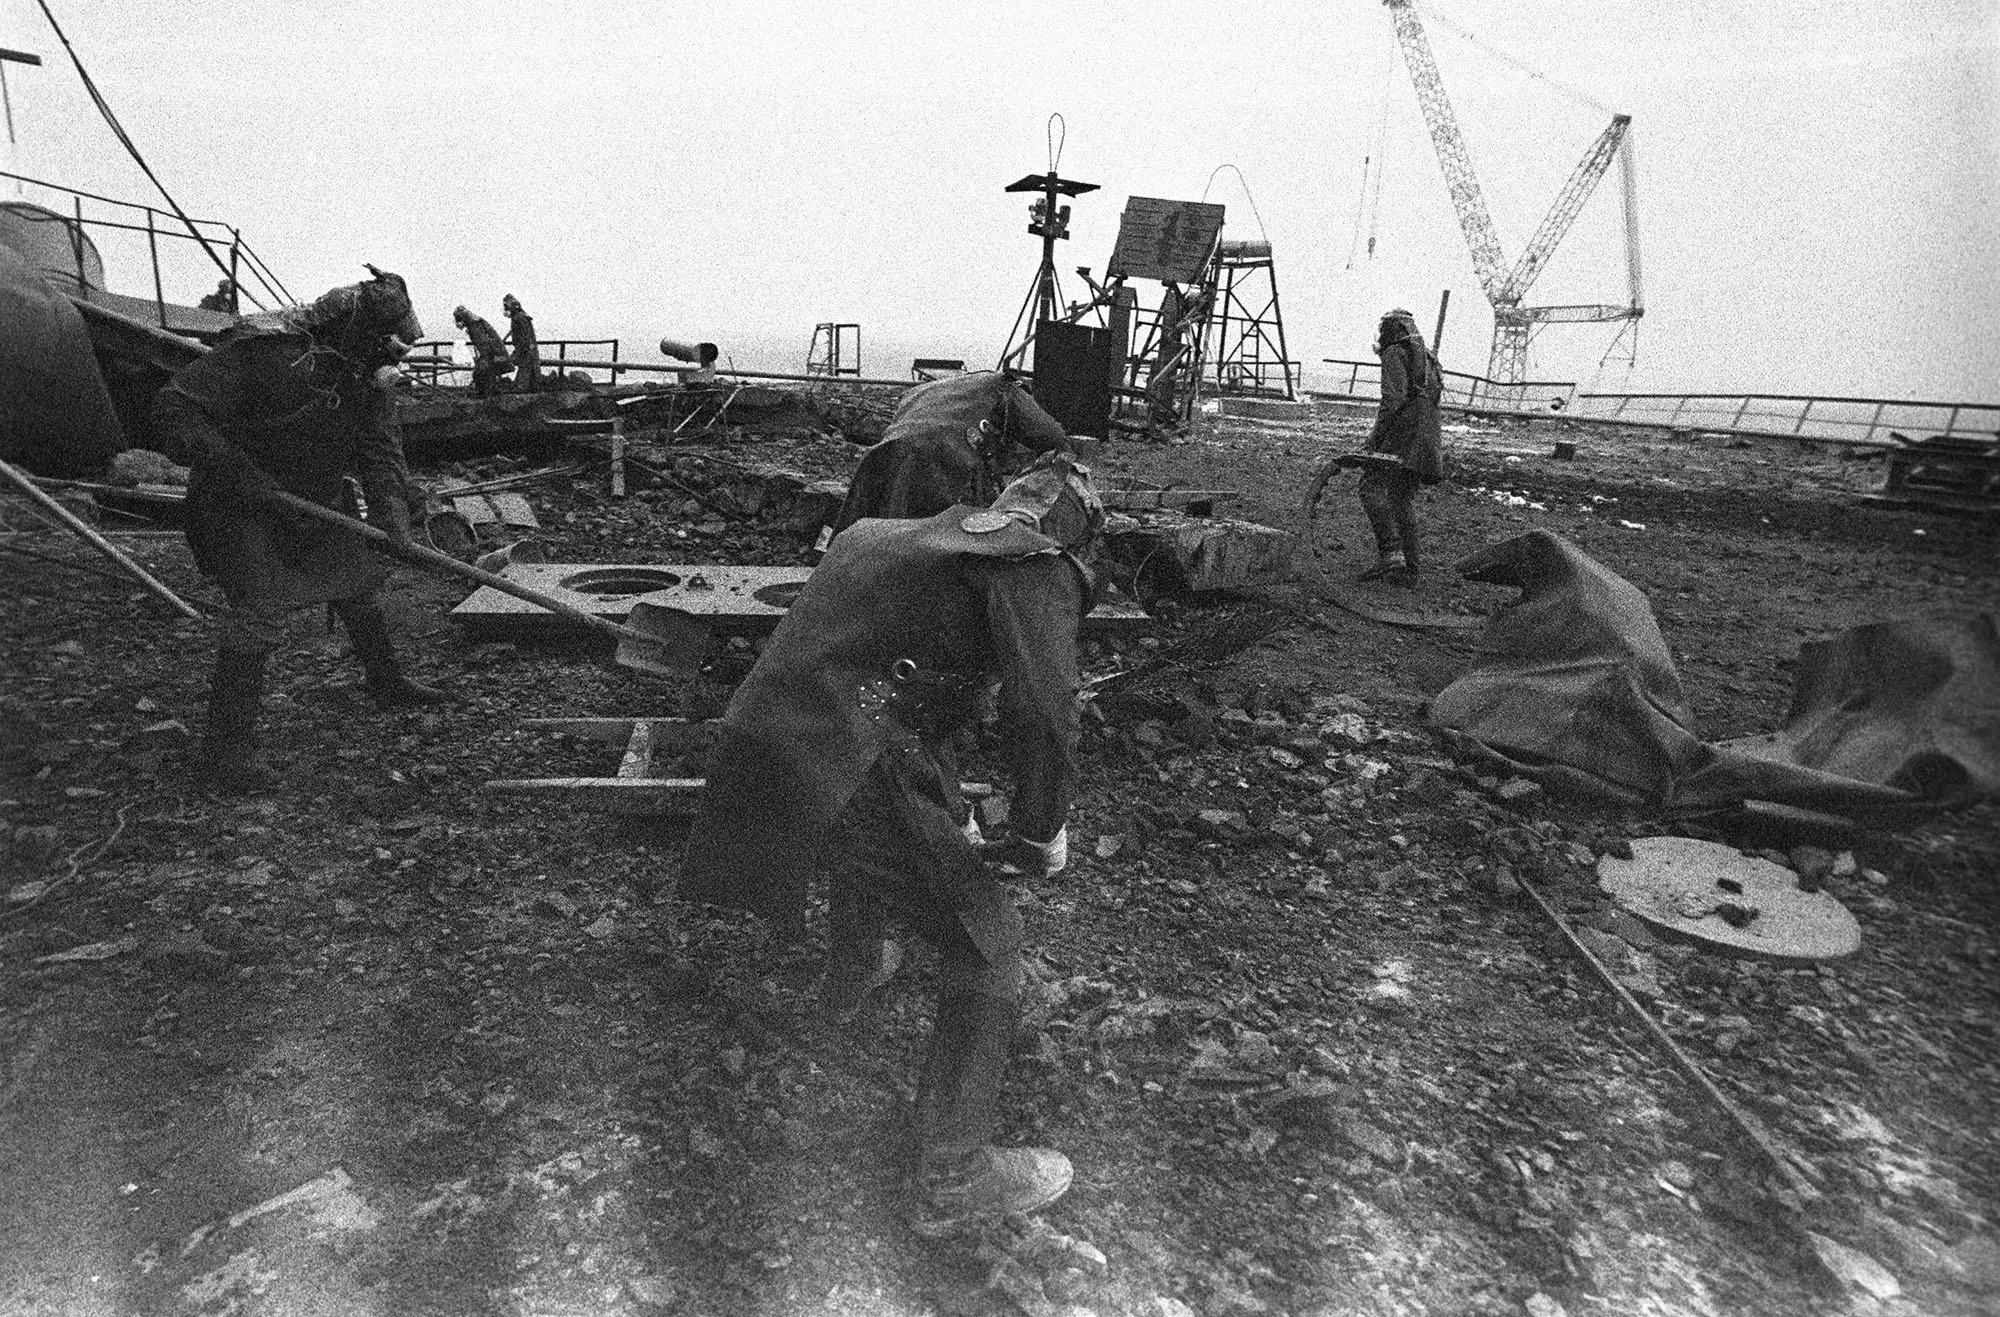 Последствия работы аэс. Чернобыль 1986 ликвидация. Чернобыль 1986 ликвидаторы. Чернобыльская АЭС 1986. Ликвидаторы ЧАЭС Чернобыль.